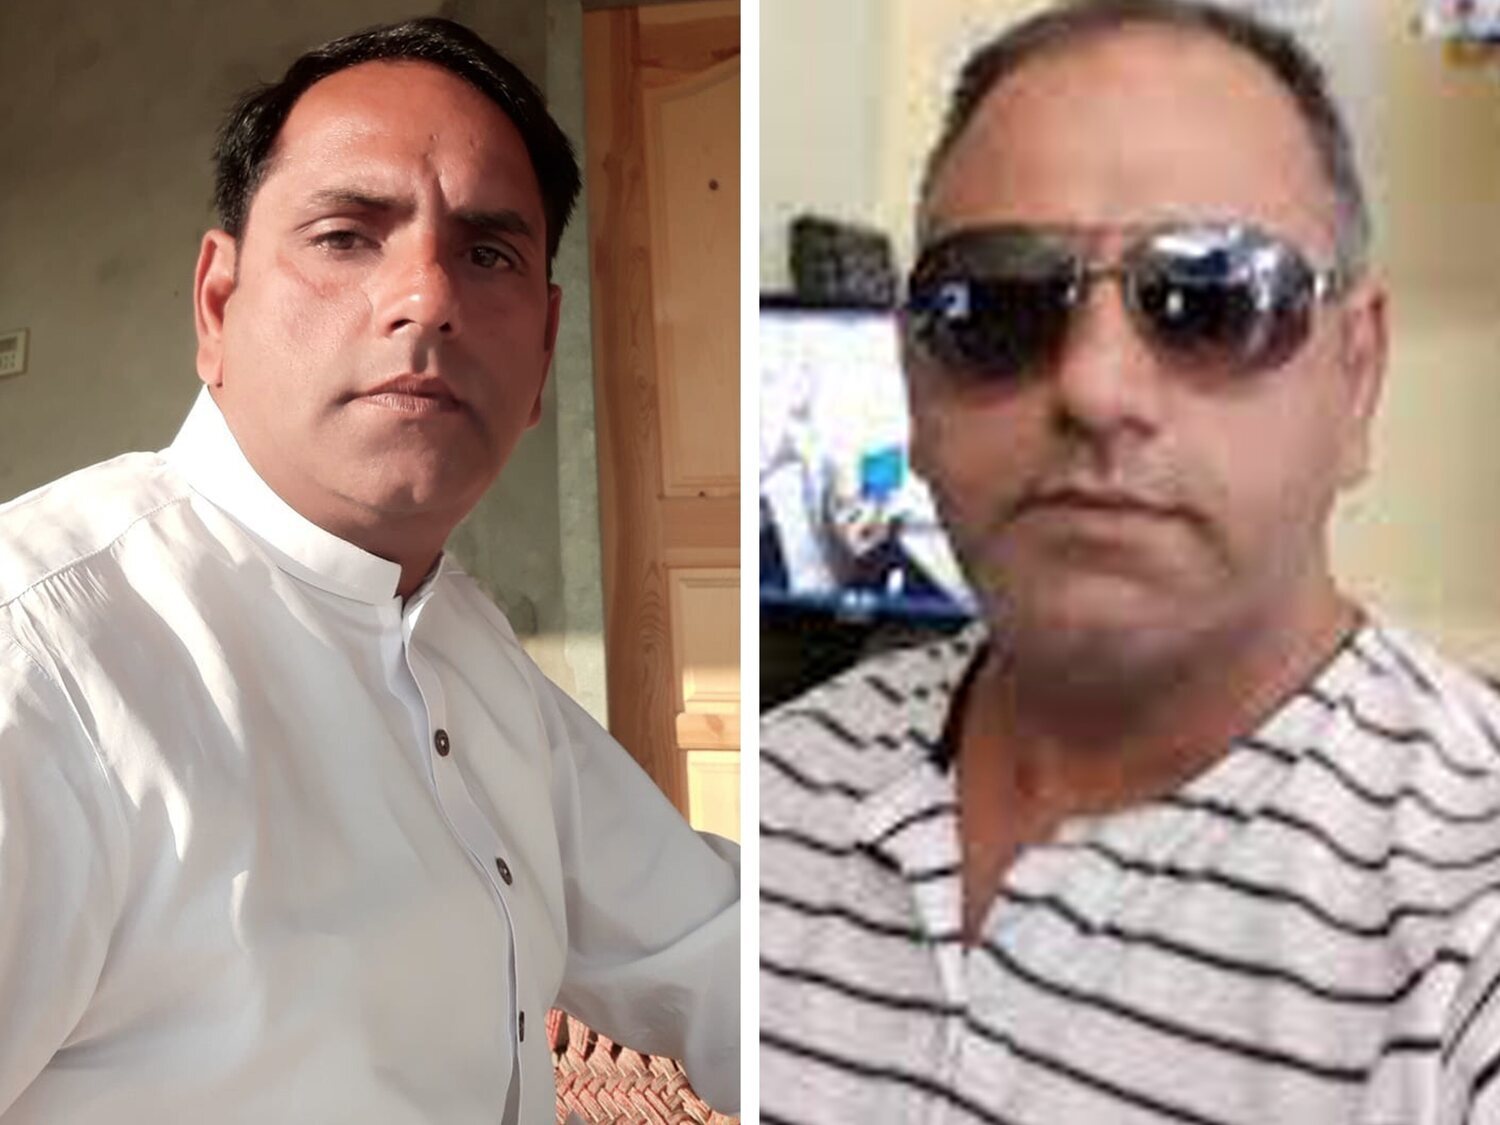 Triple crimen de Morata: El autor confeso asesina a su compañero de celda después de tres semanas en prisión